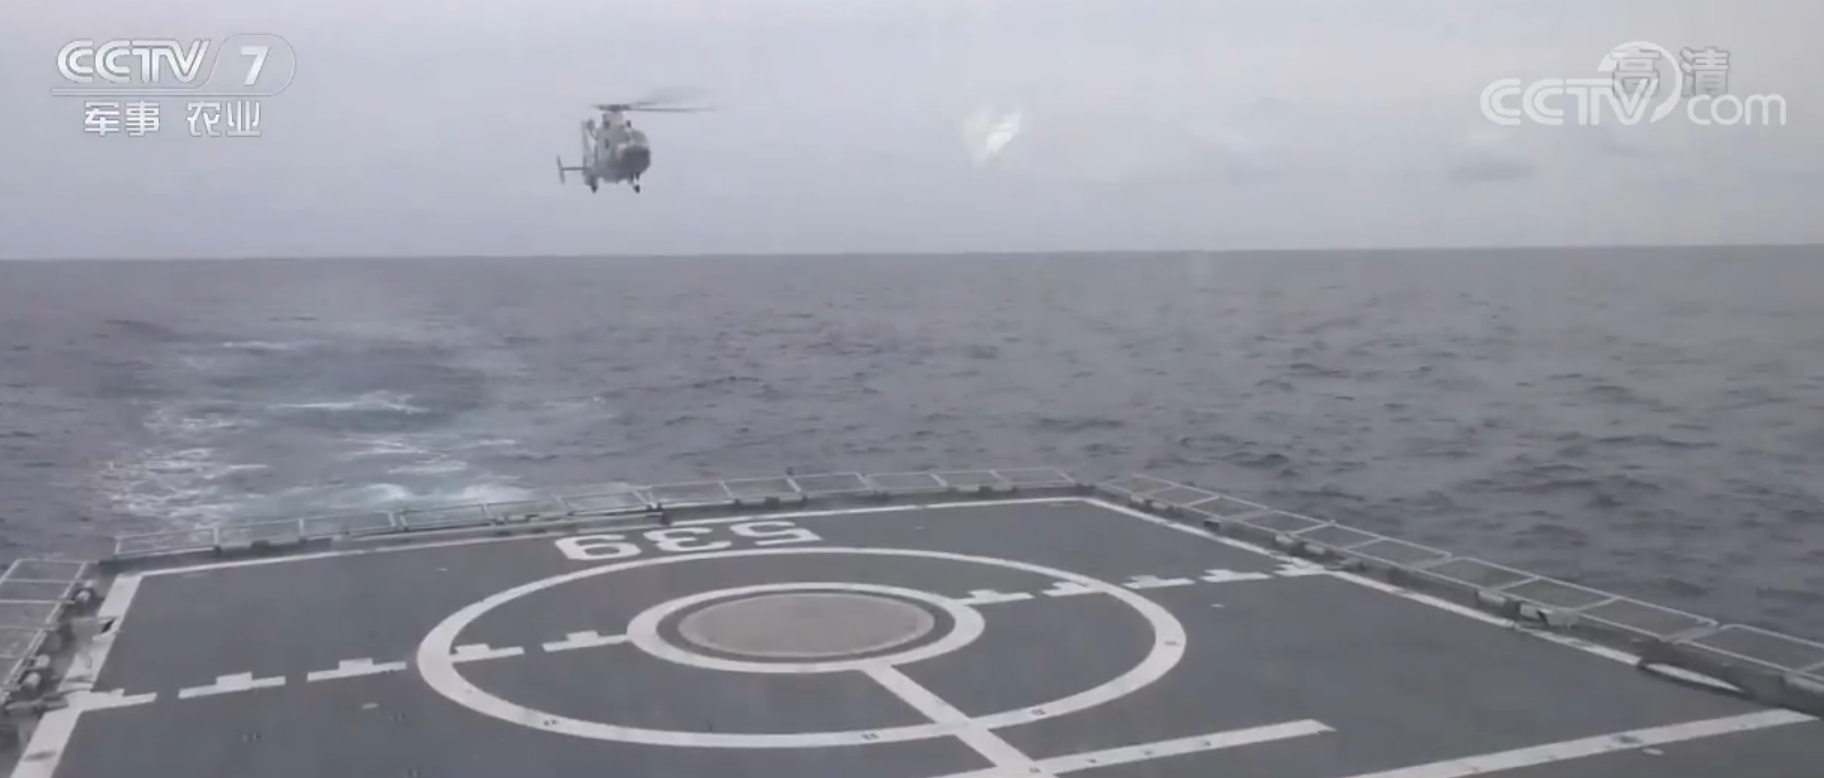 海軍第30批護航編隊組織艦載直升機跨晝夜飛行訓練【3】